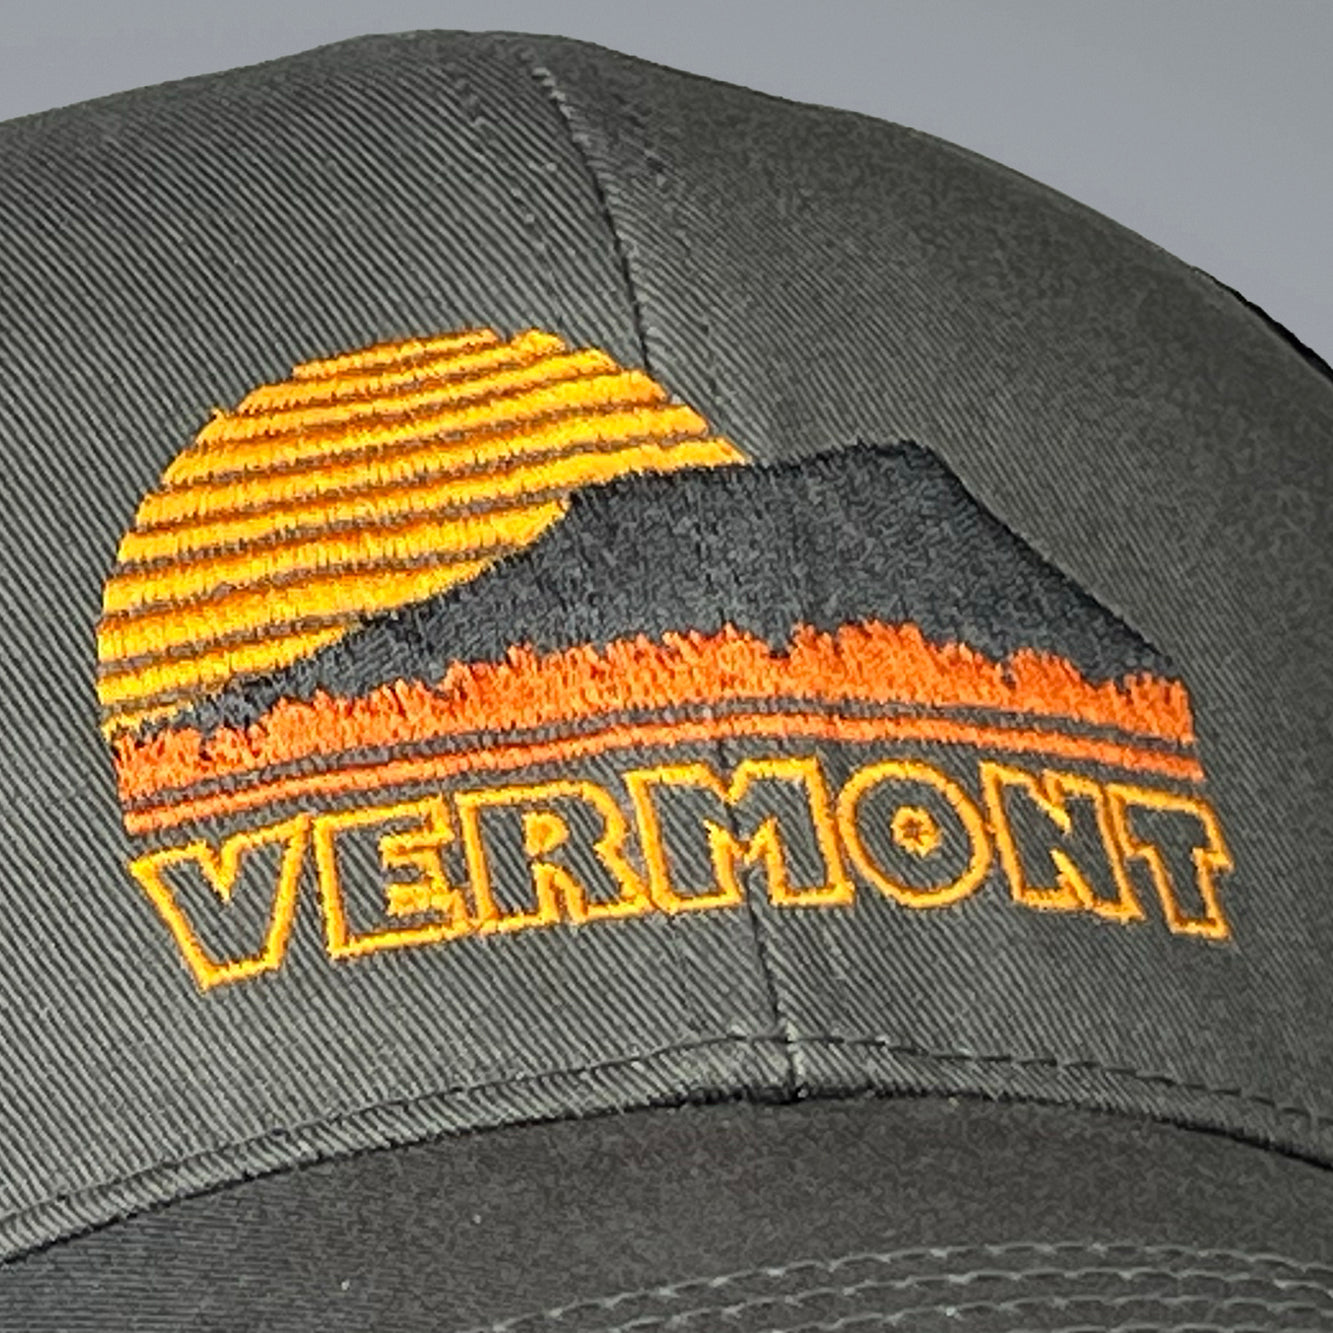 Vermont Sunset trucker hat in grey.